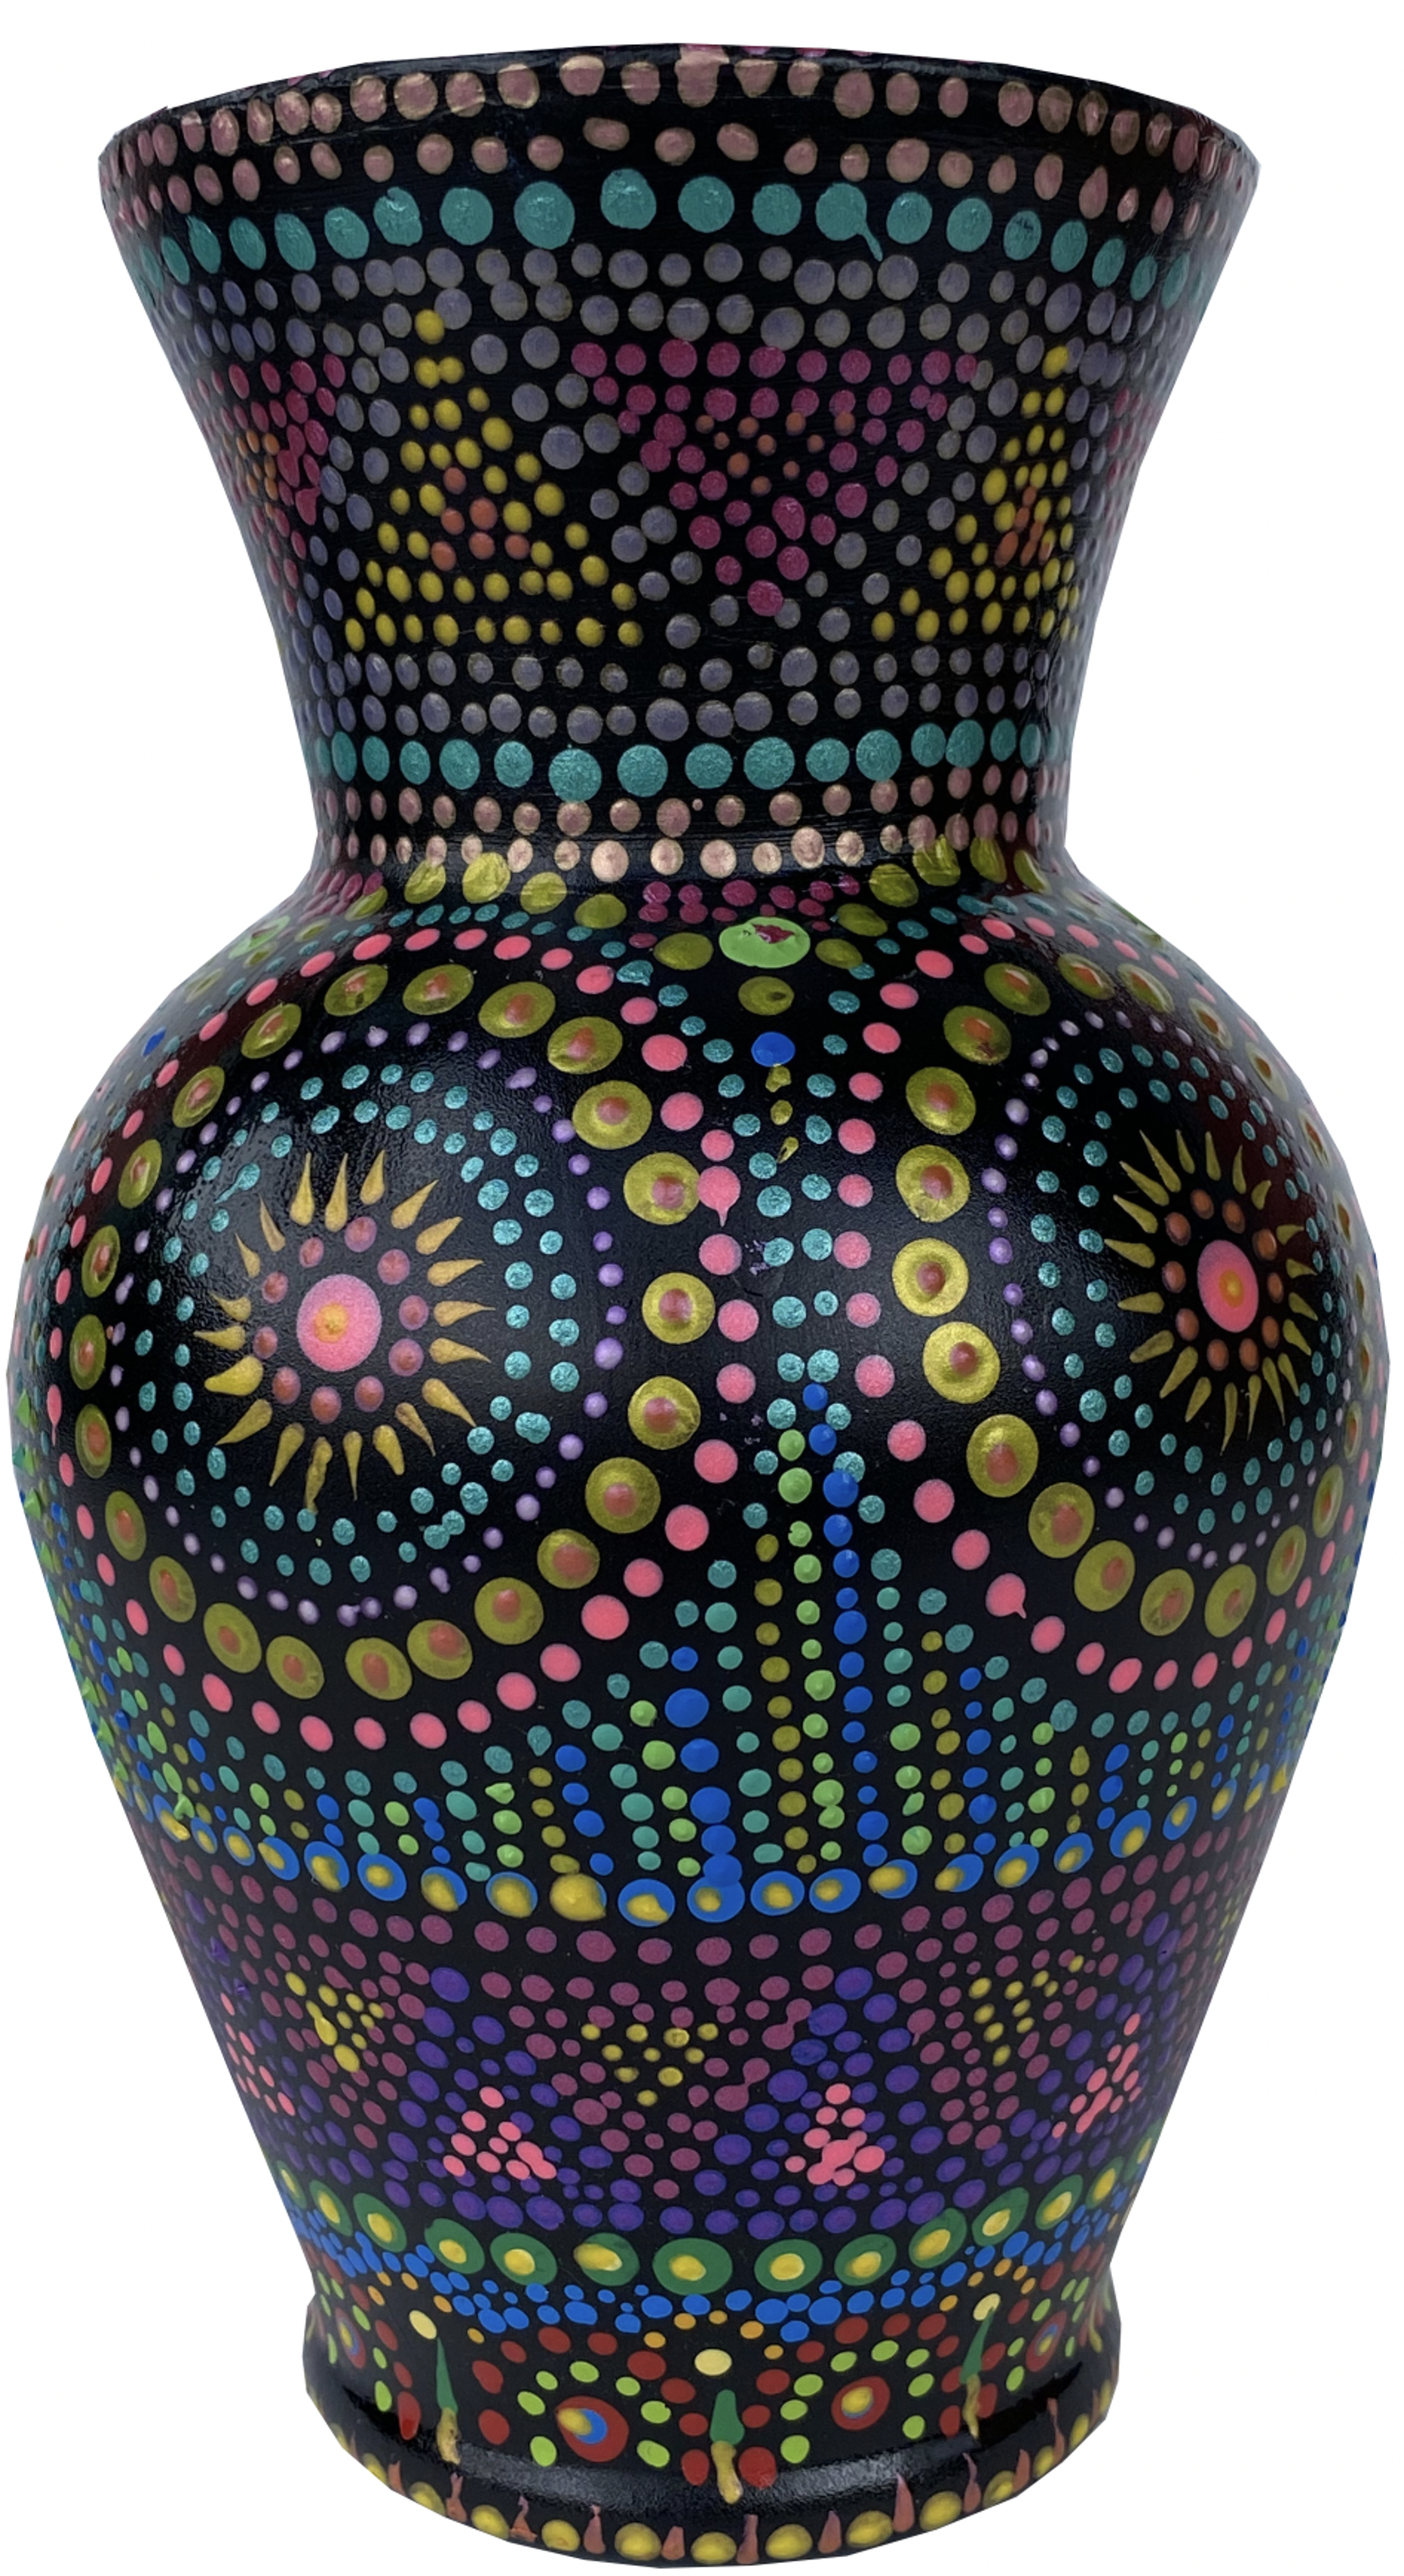 Vase by Carolyn Morgan Bauer